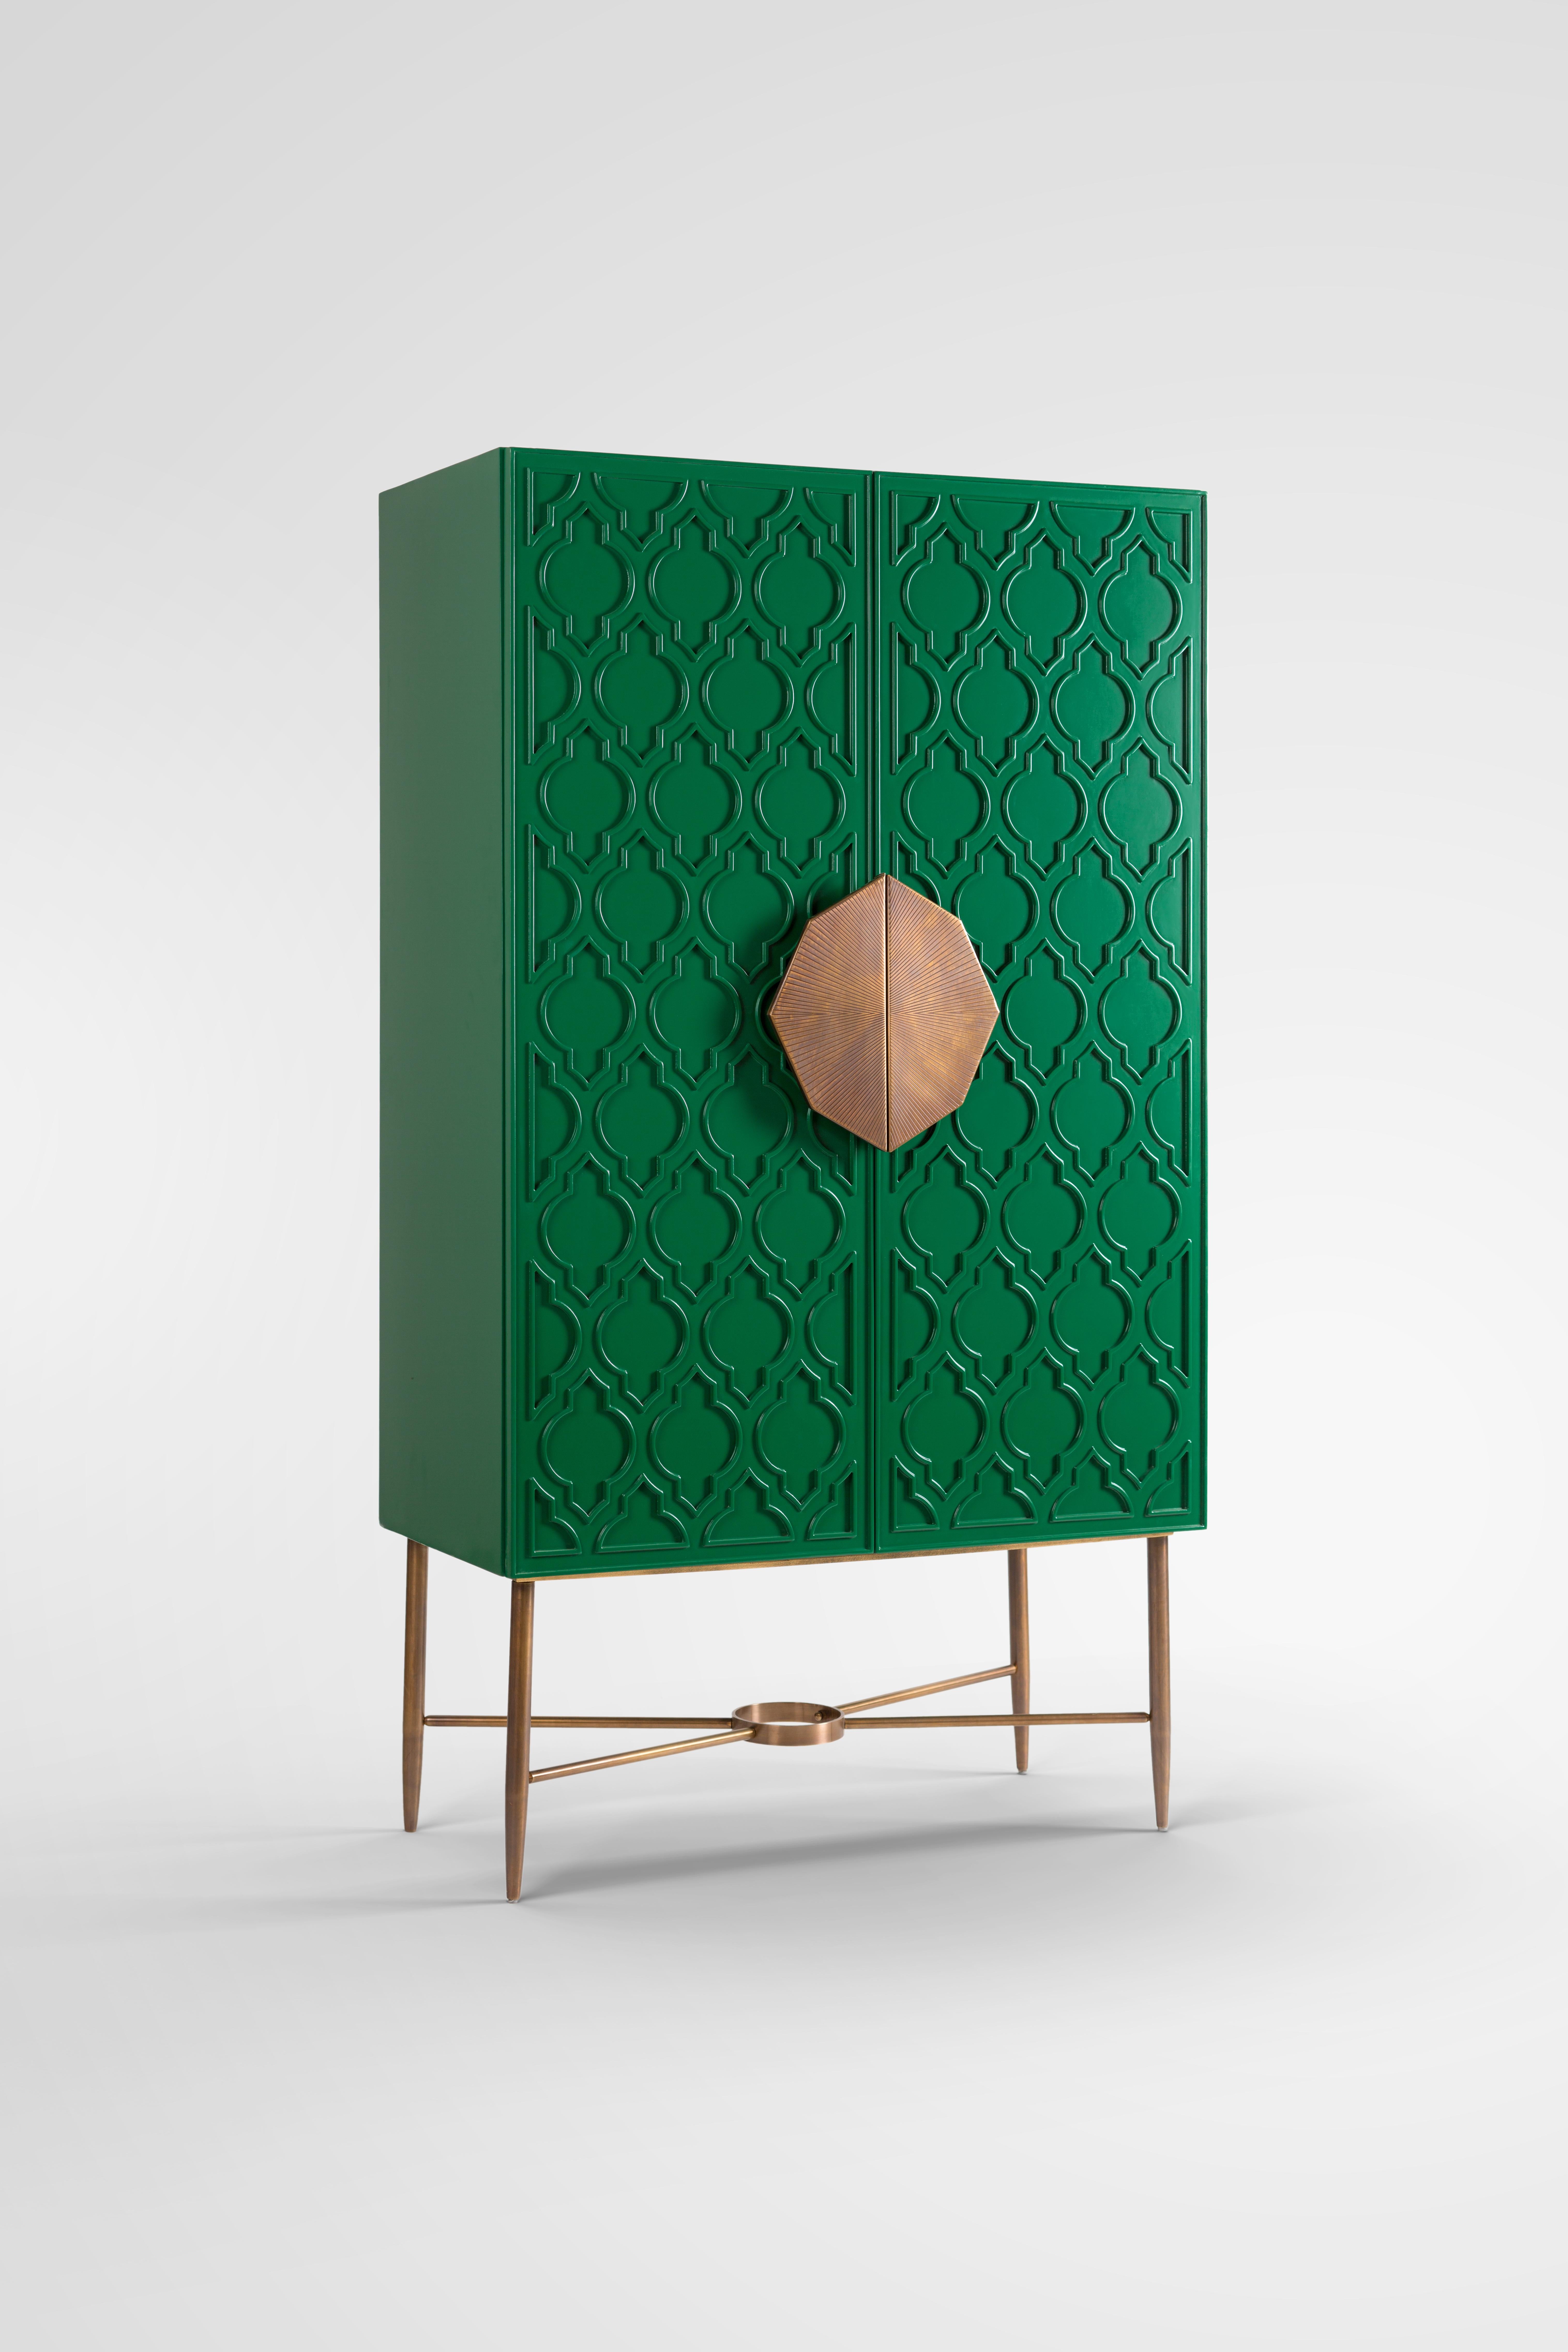 Grün lackiertes Kabinett mit islamischem Muster und handgefertigtem Messinggriff. 
Unser Andalusia Art Deco Schrank ist von unserem reichen islamischen Erbe inspiriert. Es ist mit einem islamischen Motiv gestaltet und in königlichem Grün gestrichen,